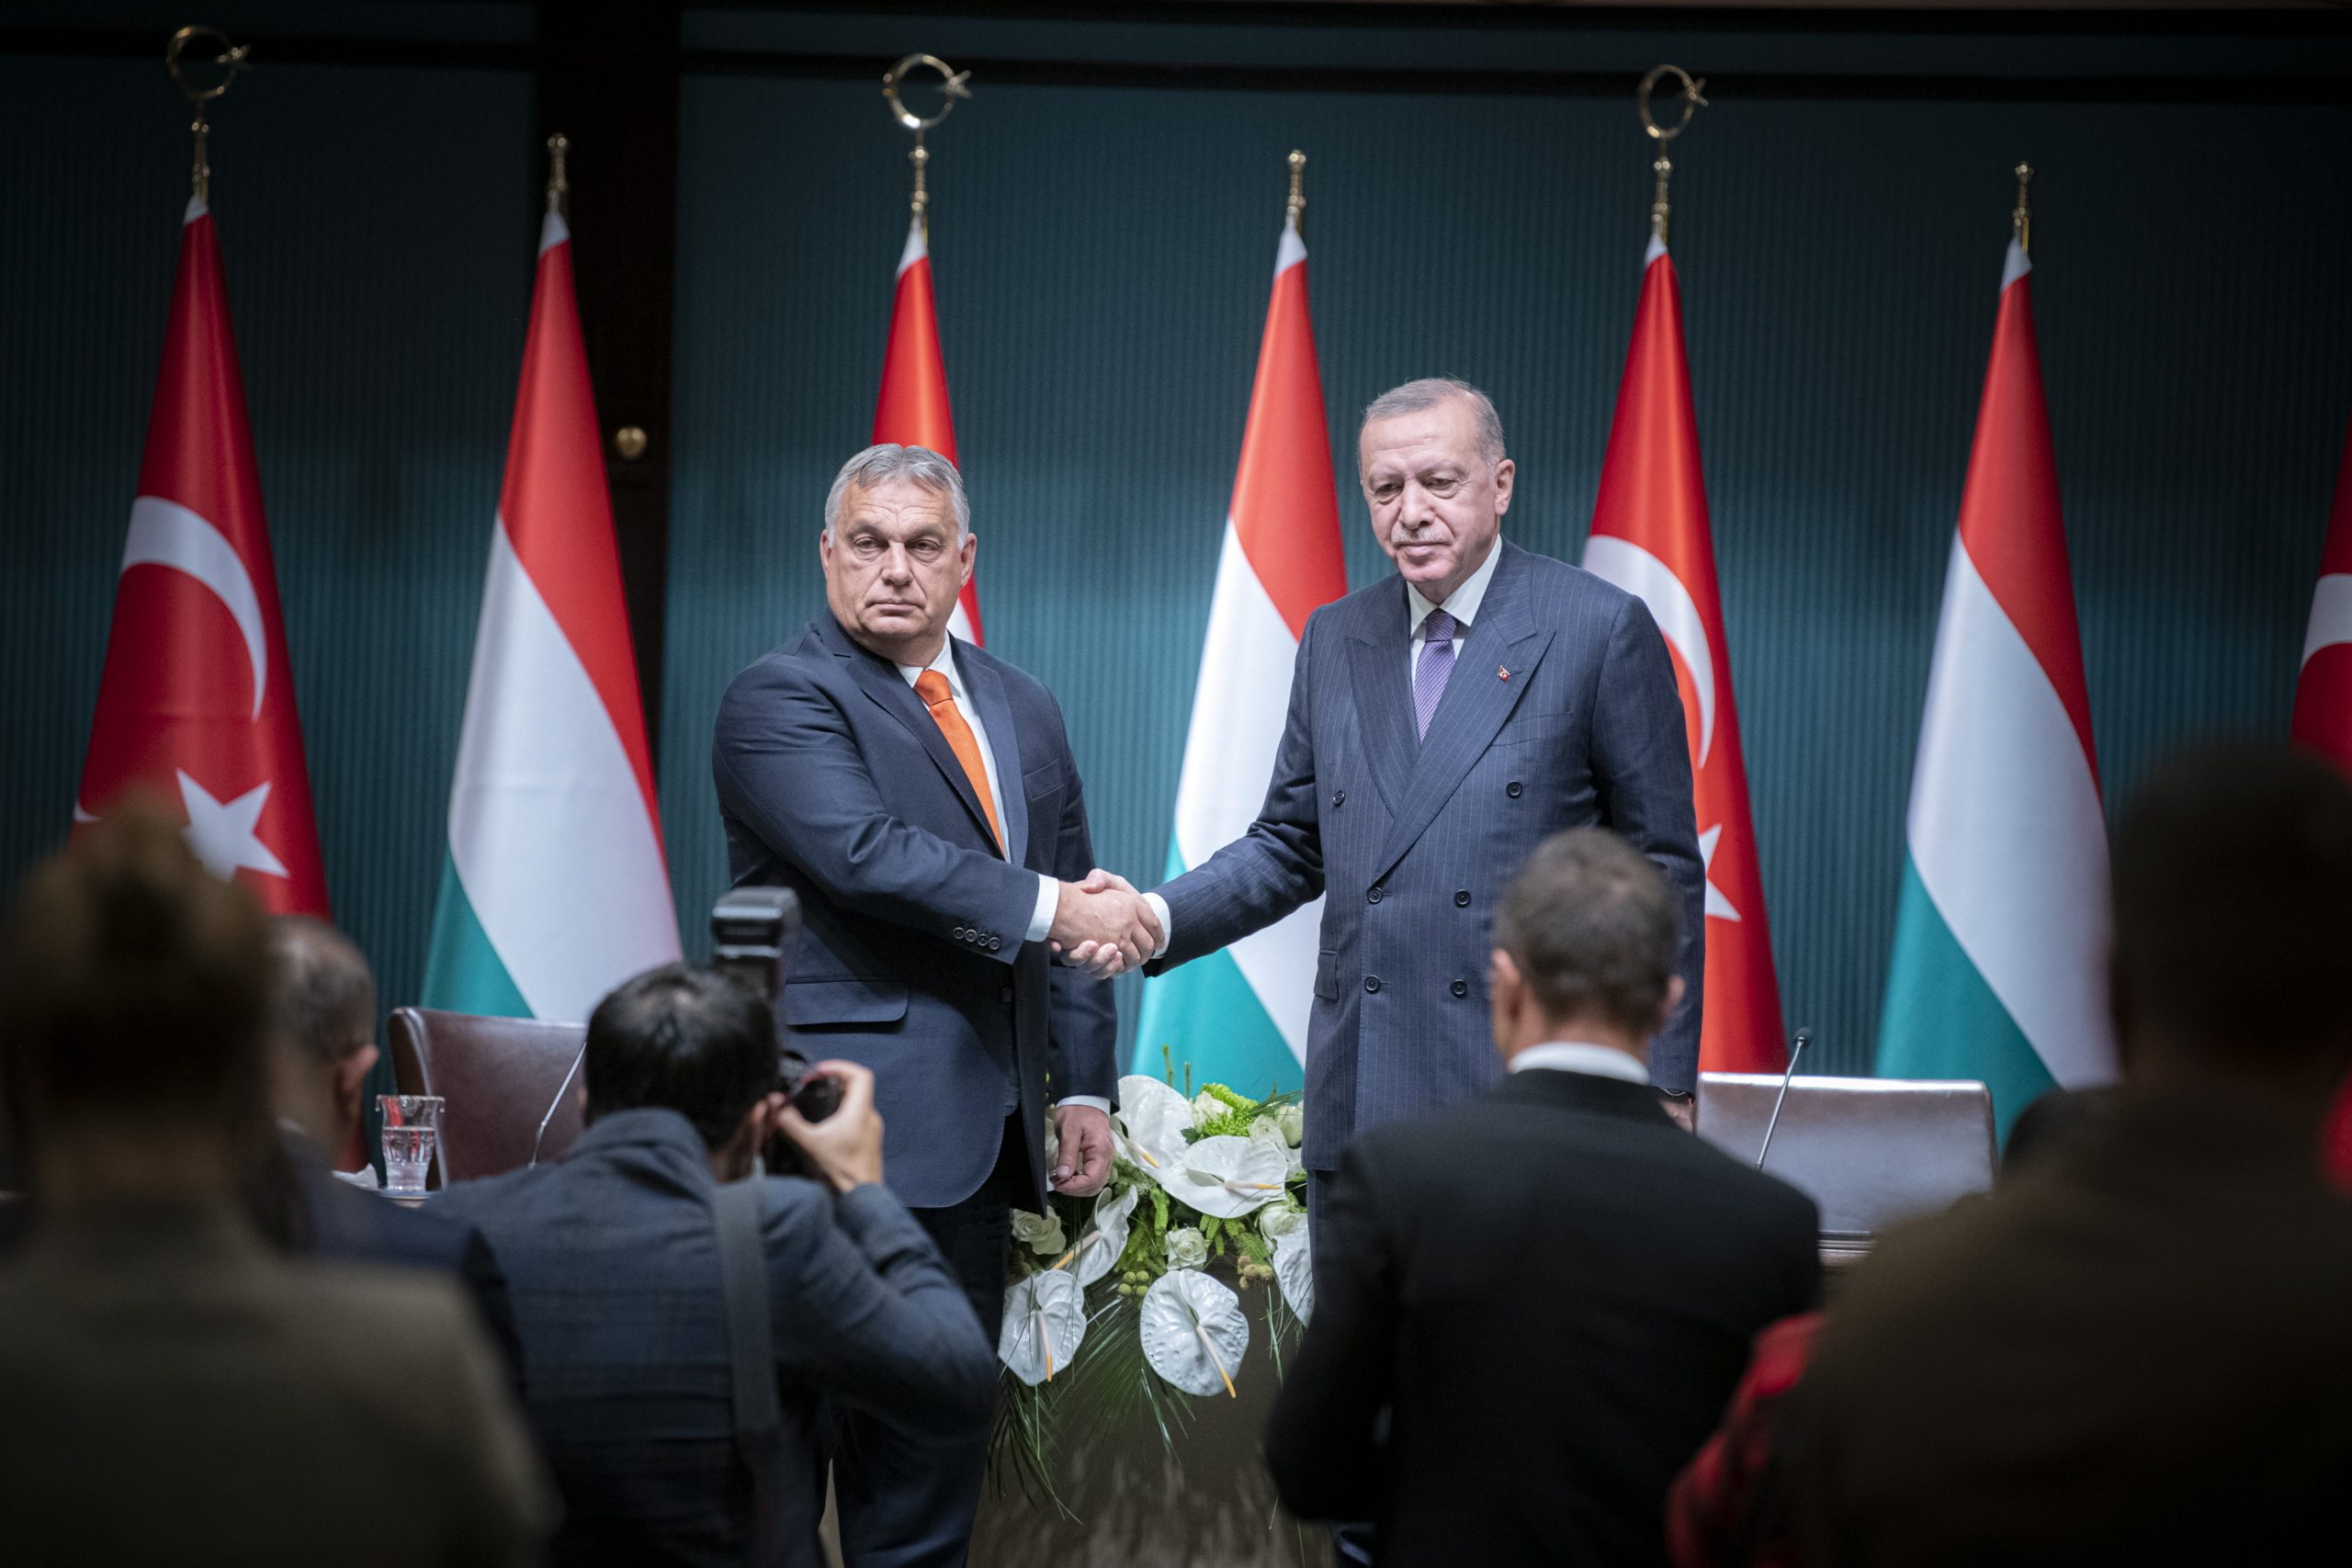 Orbán fordert mehr Geld für die Türkei von Brüssel